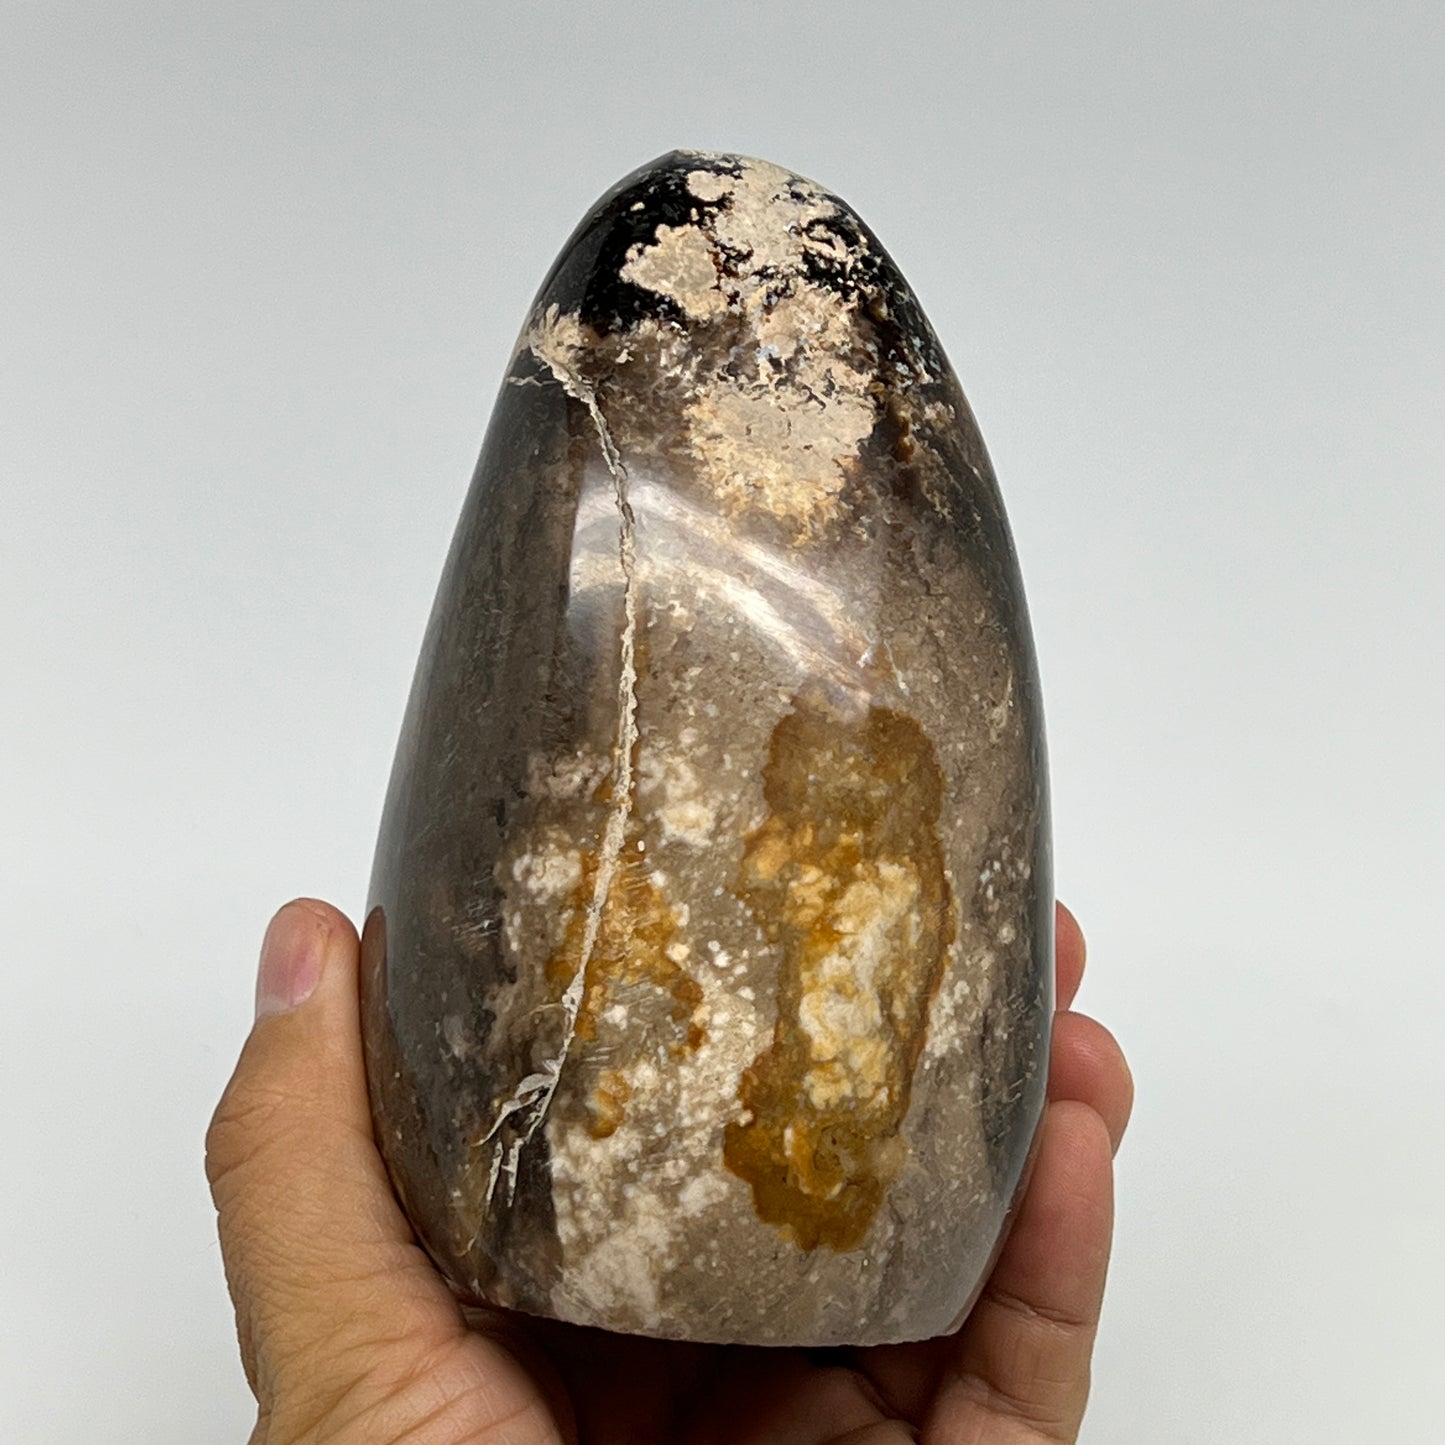 770g,4.8"x3"x2.8" Black Opal Freeform Polished Gemstone @Madagascar,B21096